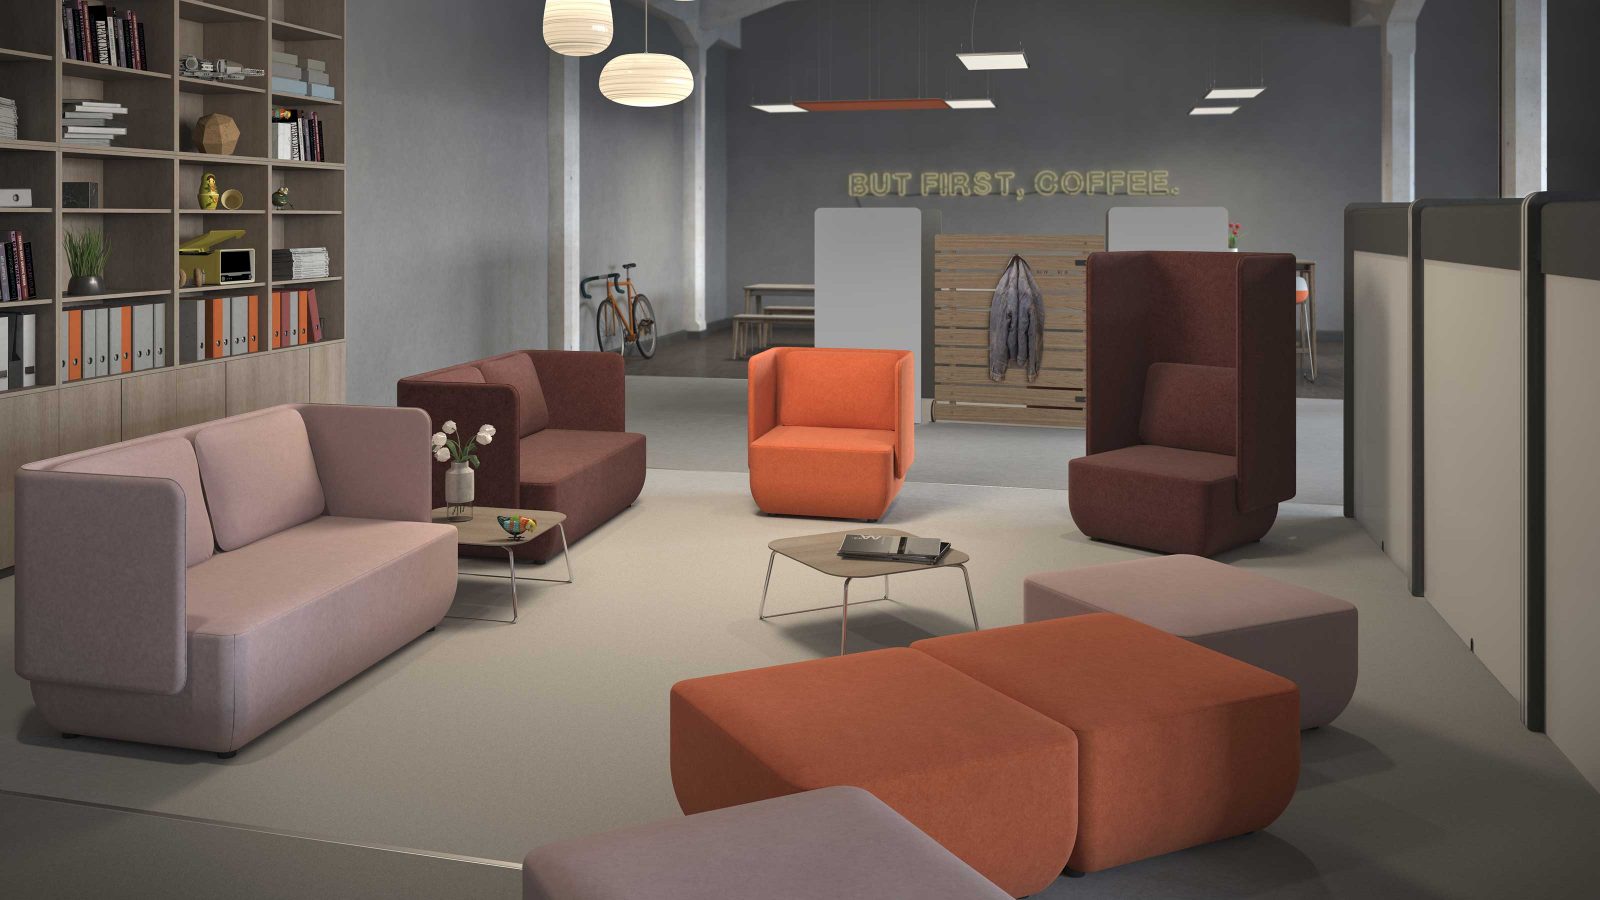 Rendering zeigt eine Büroszene mit einer Loungeecke. Darin stehen Sofas, Sessel und Sitzhocker in den Farben Rosa, Braun und Orange sowie zwei Beistelltische. Links an der Wand steht ein hohes Büroregal.